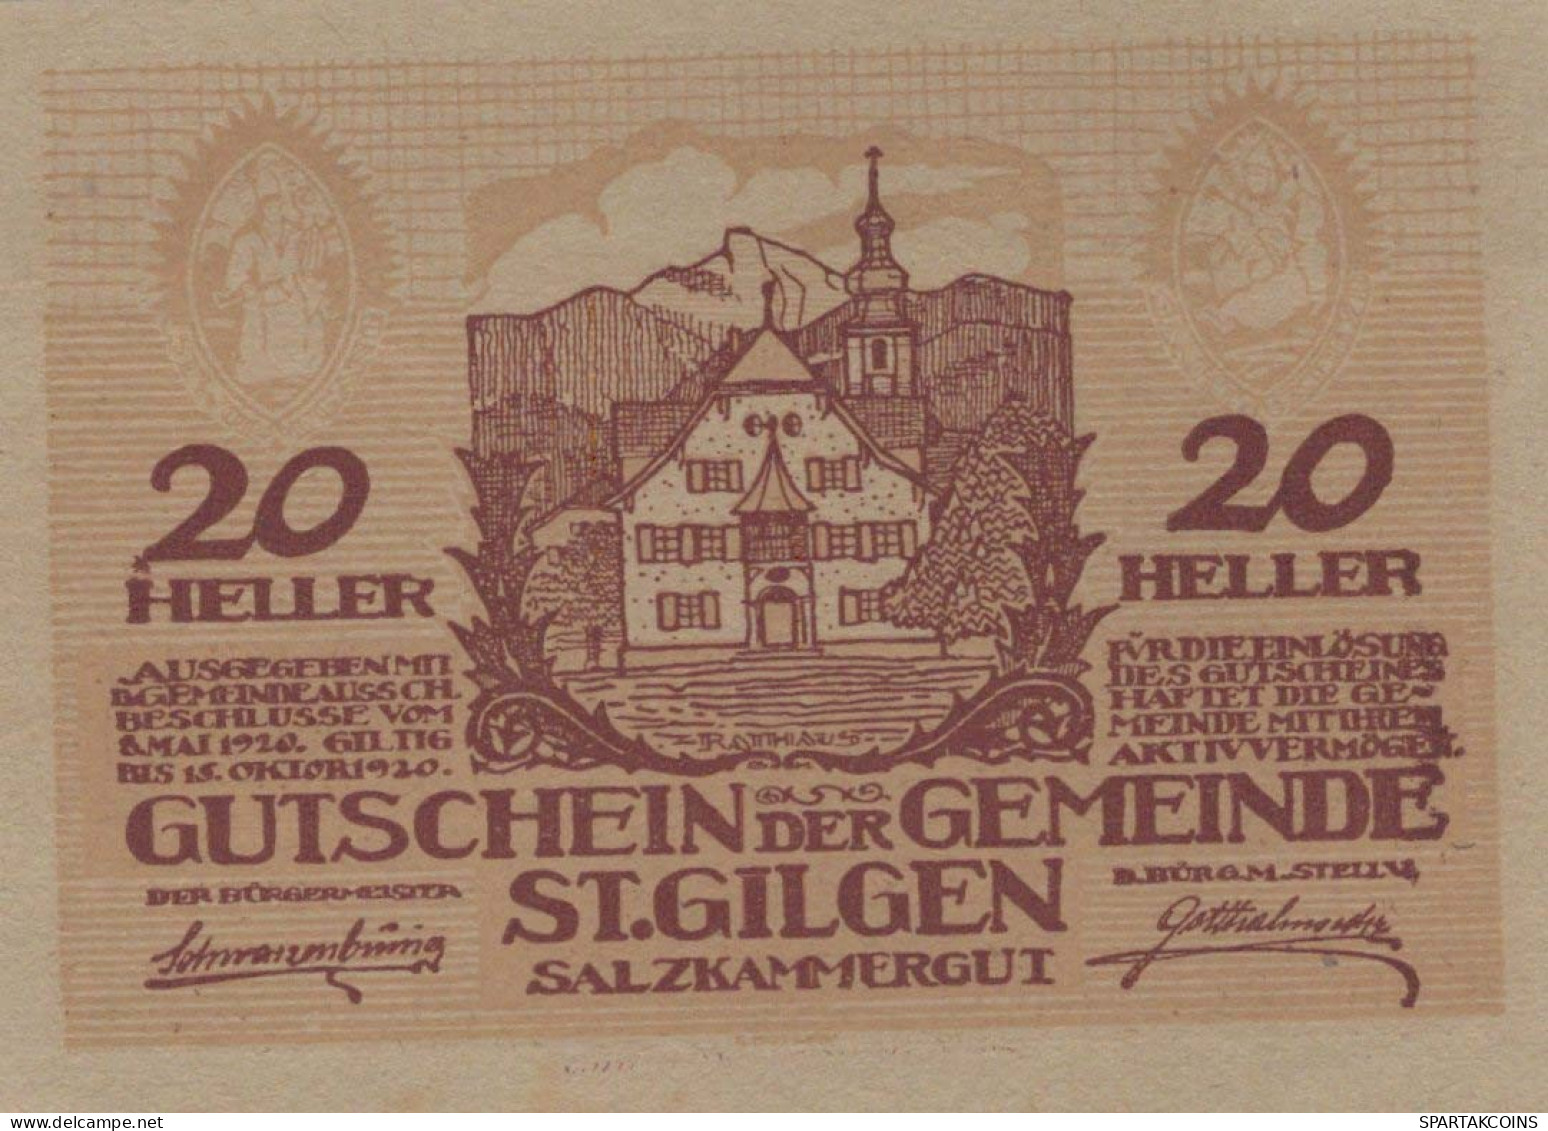 20 HELLER 1920 Stadt SANKT GILGEN Salzburg Österreich Notgeld Papiergeld Banknote #PG791 - [11] Local Banknote Issues